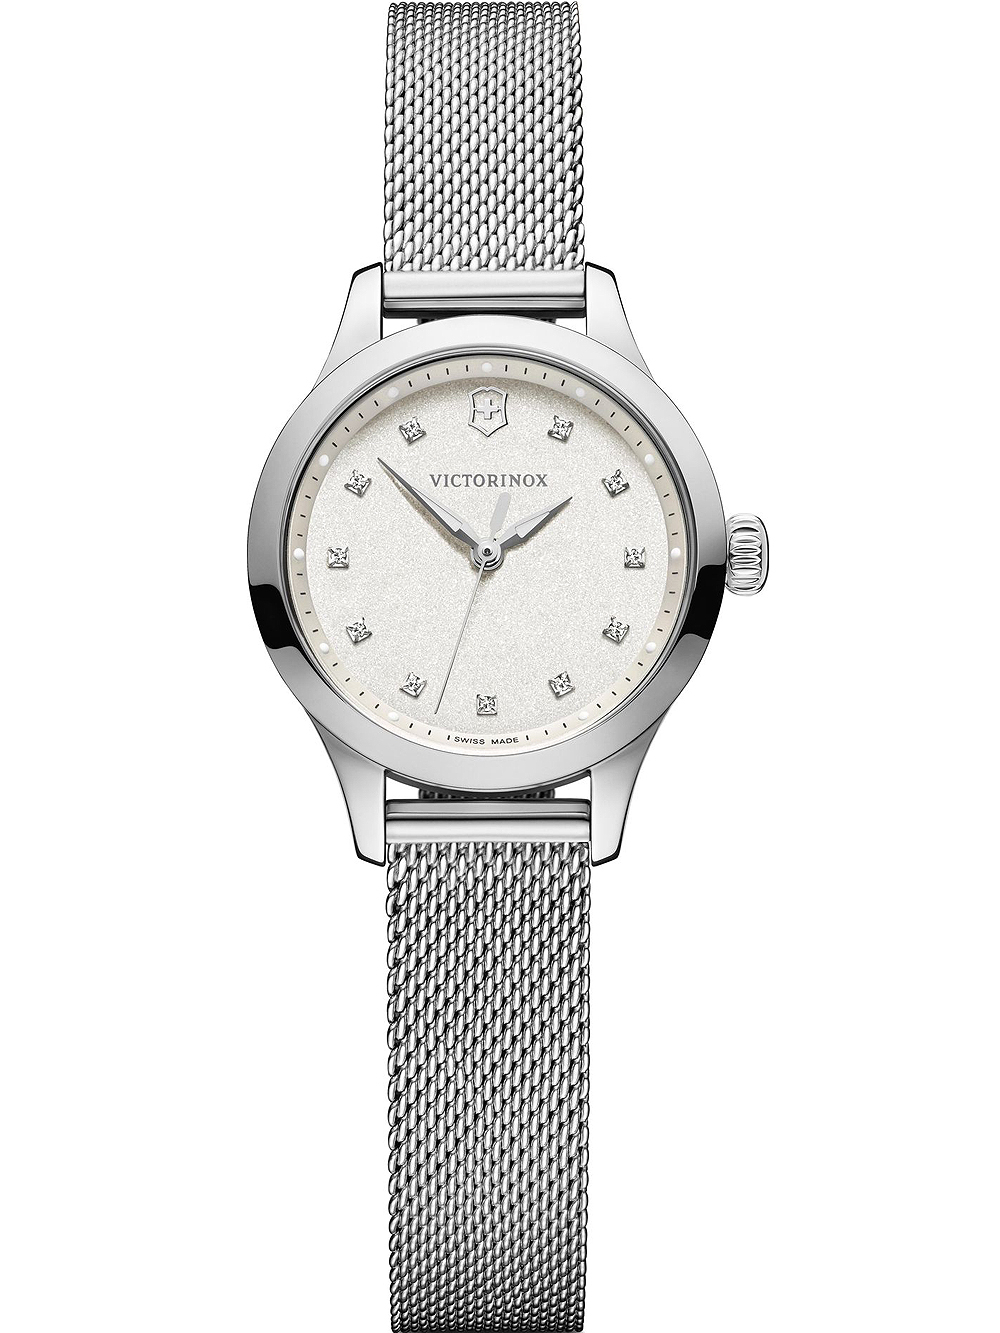 Dámské hodinky Victorinox 241878 Alliance XS